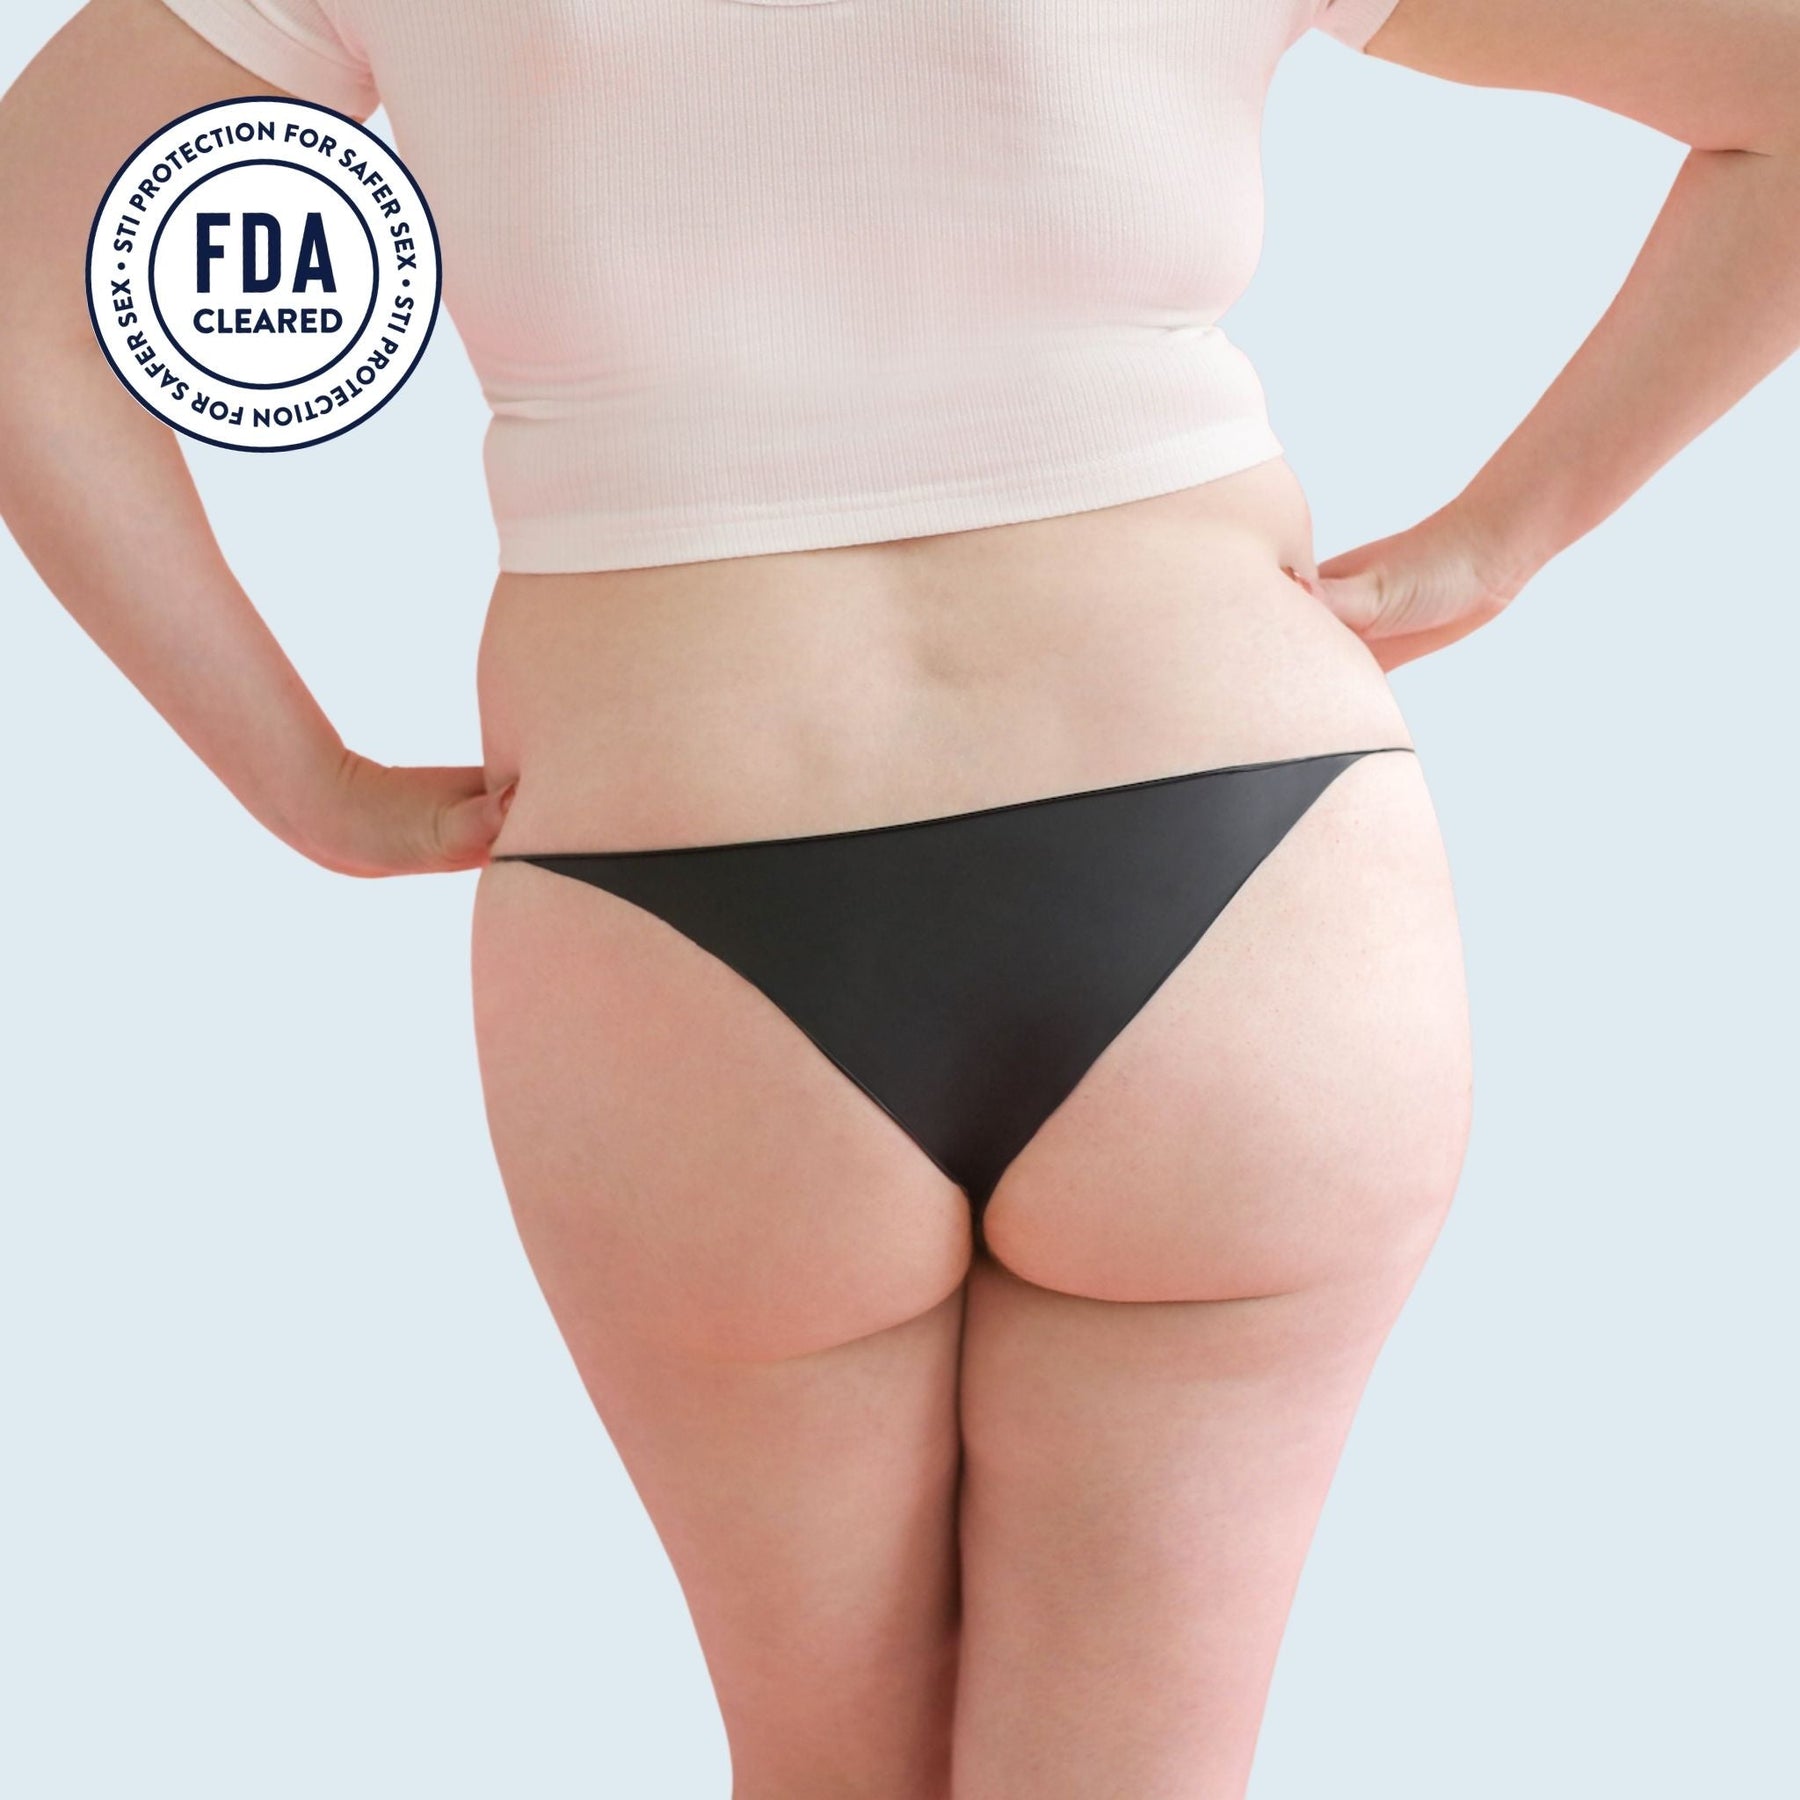 The backside of a woman wearing Lorals for STI Protection Bikini panties |Bikini